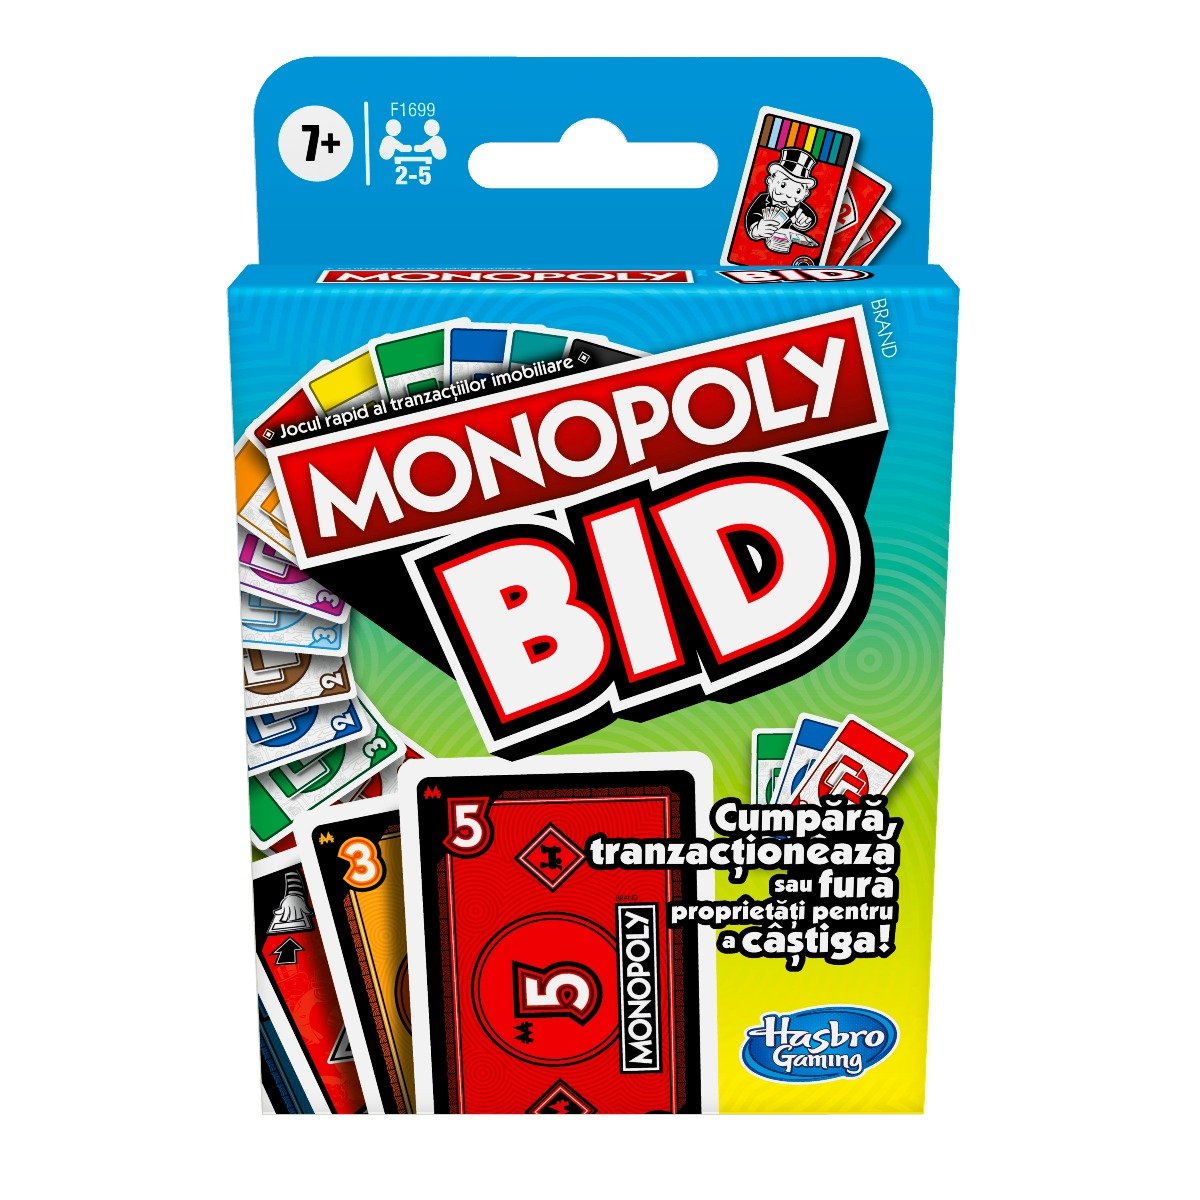 Joc Monopoly Bid